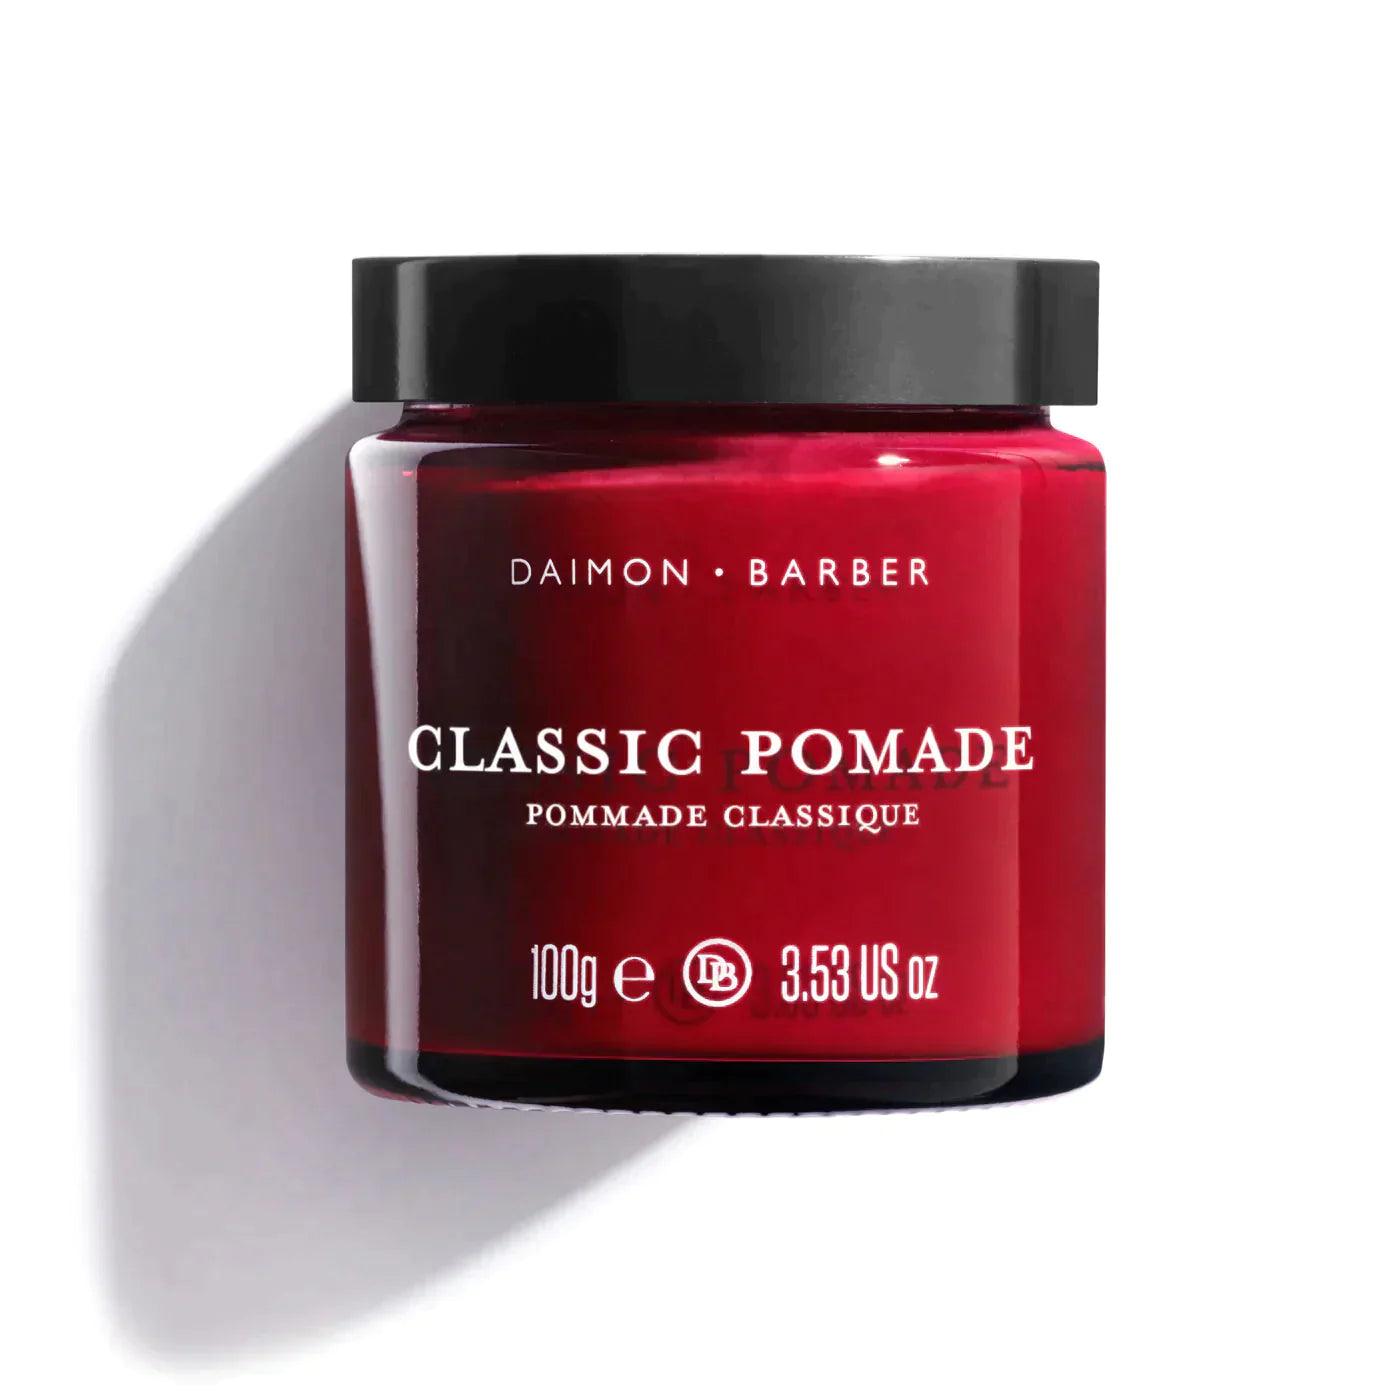 Daimon Barber Classic Pomade | Pomade | Daimon Barber | JK SHOP | JK Barber og herre frisør | Lavepriser | Best